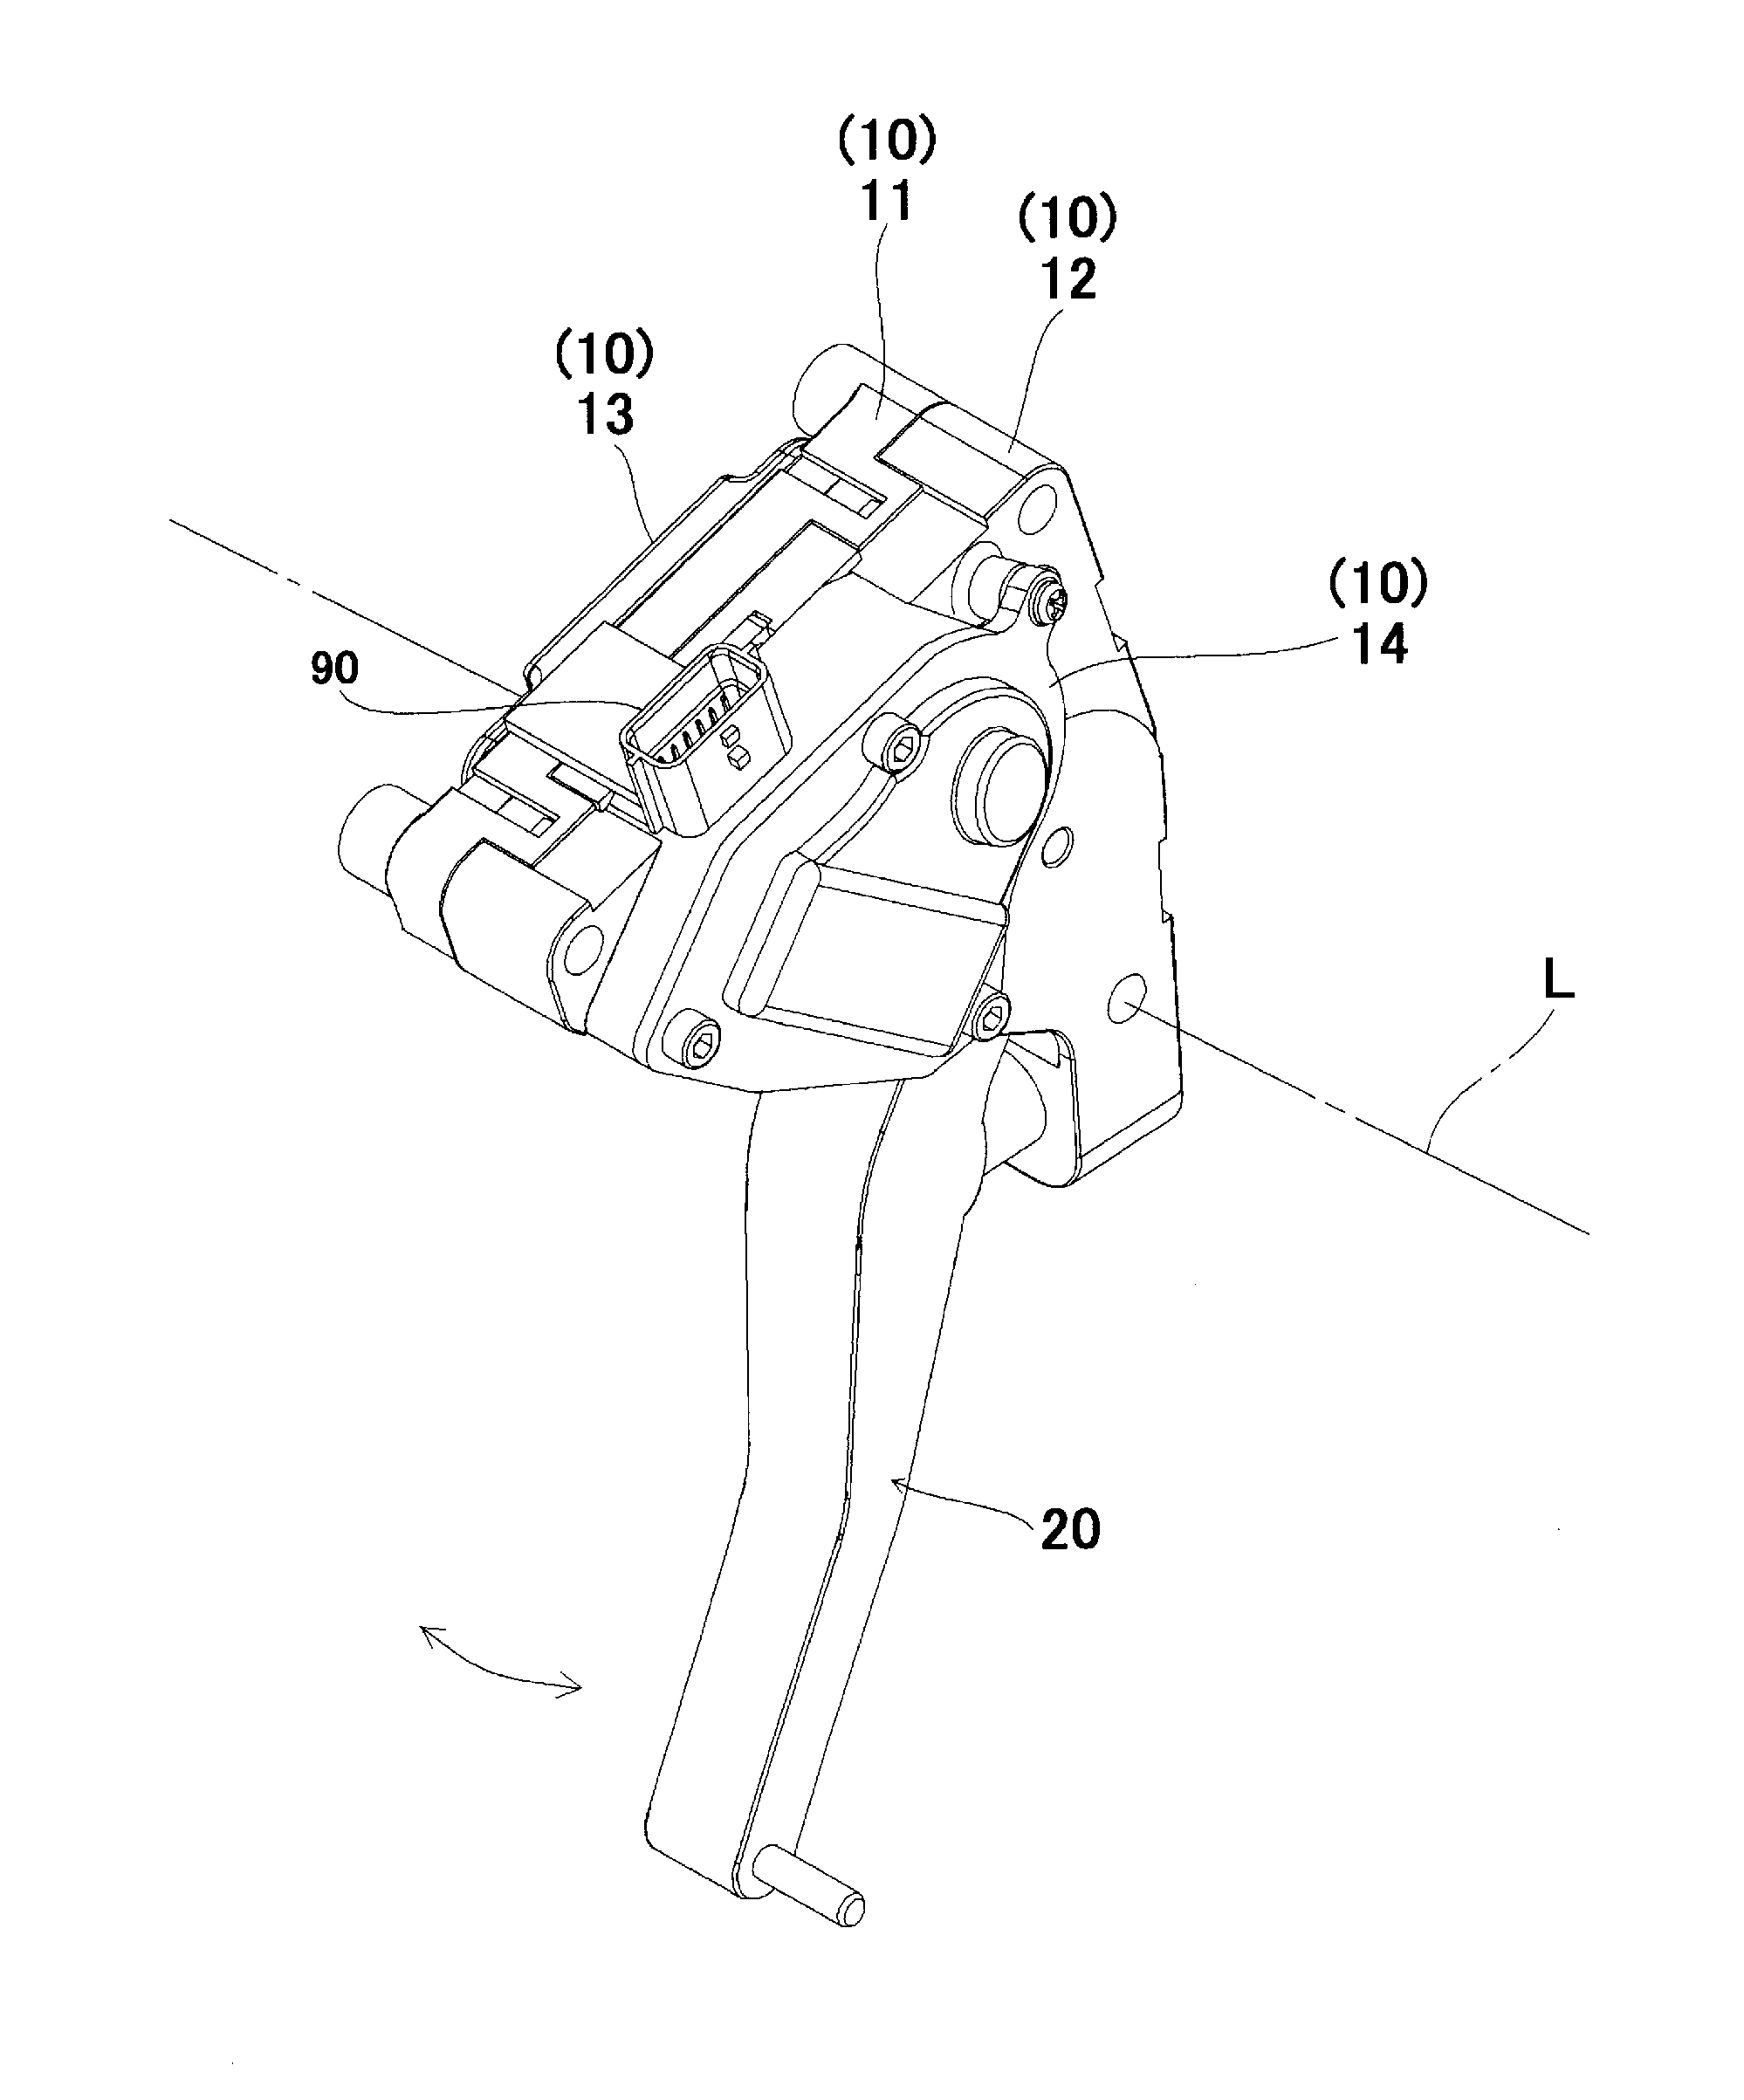 Accelerator pedal device